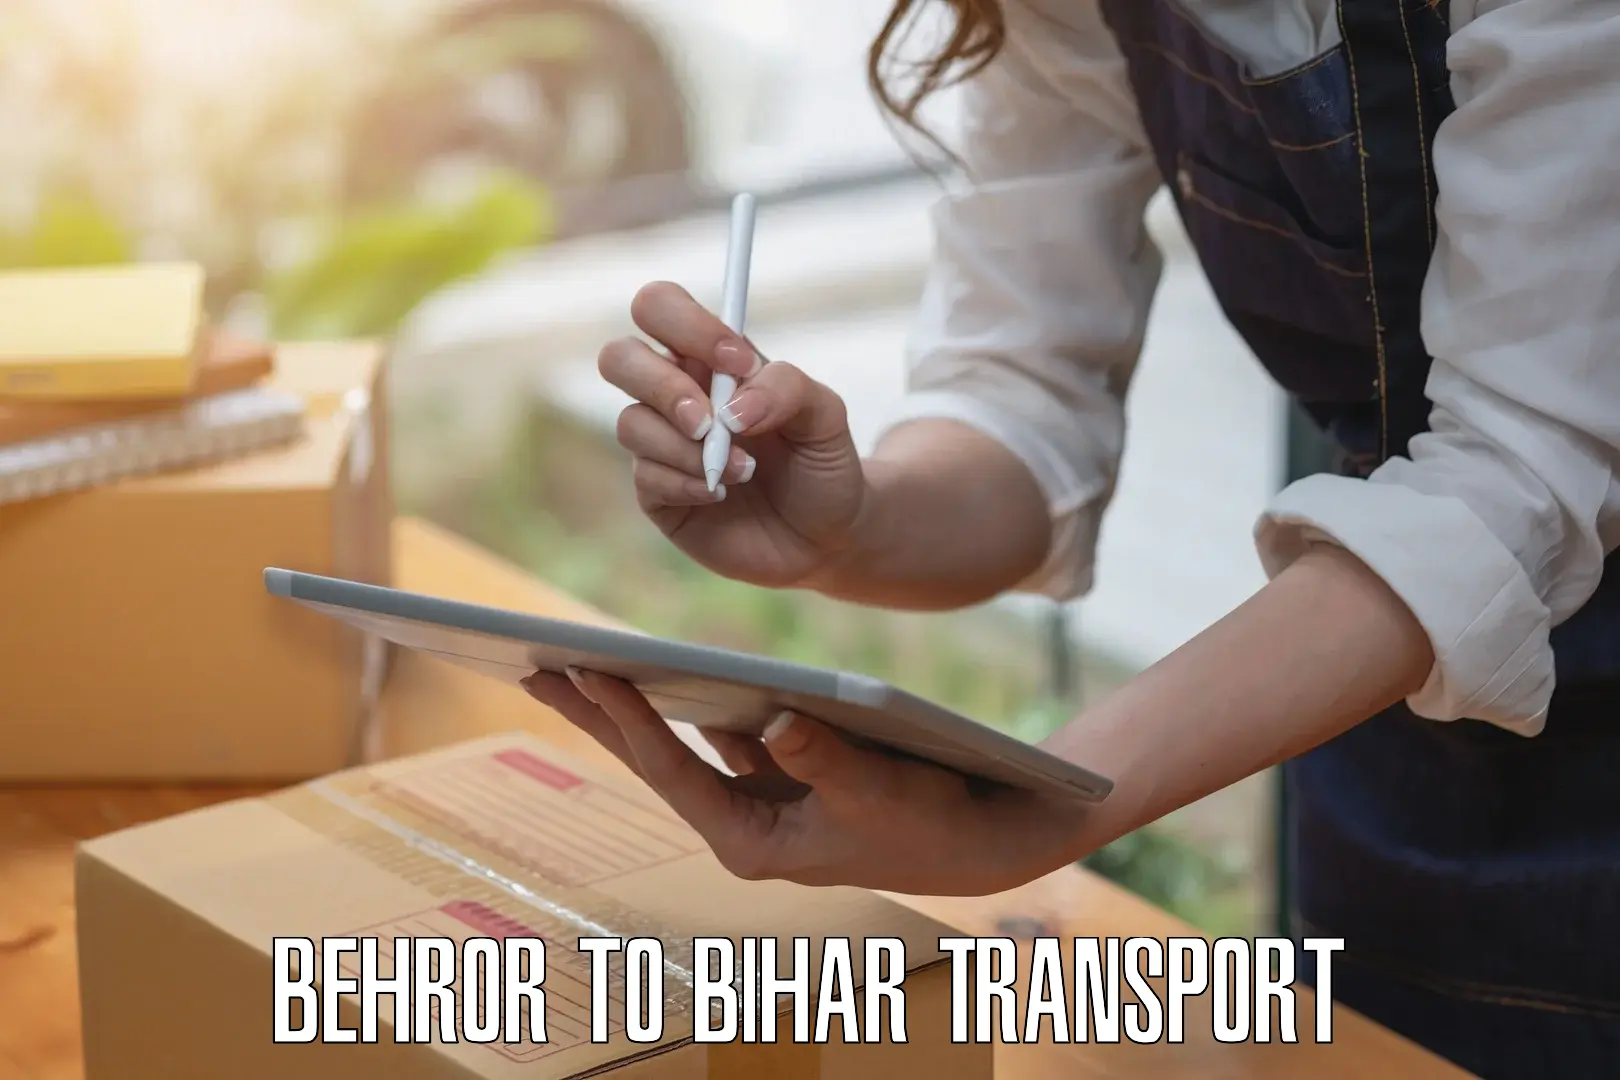 Truck transport companies in India Behror to Bihar Sharif